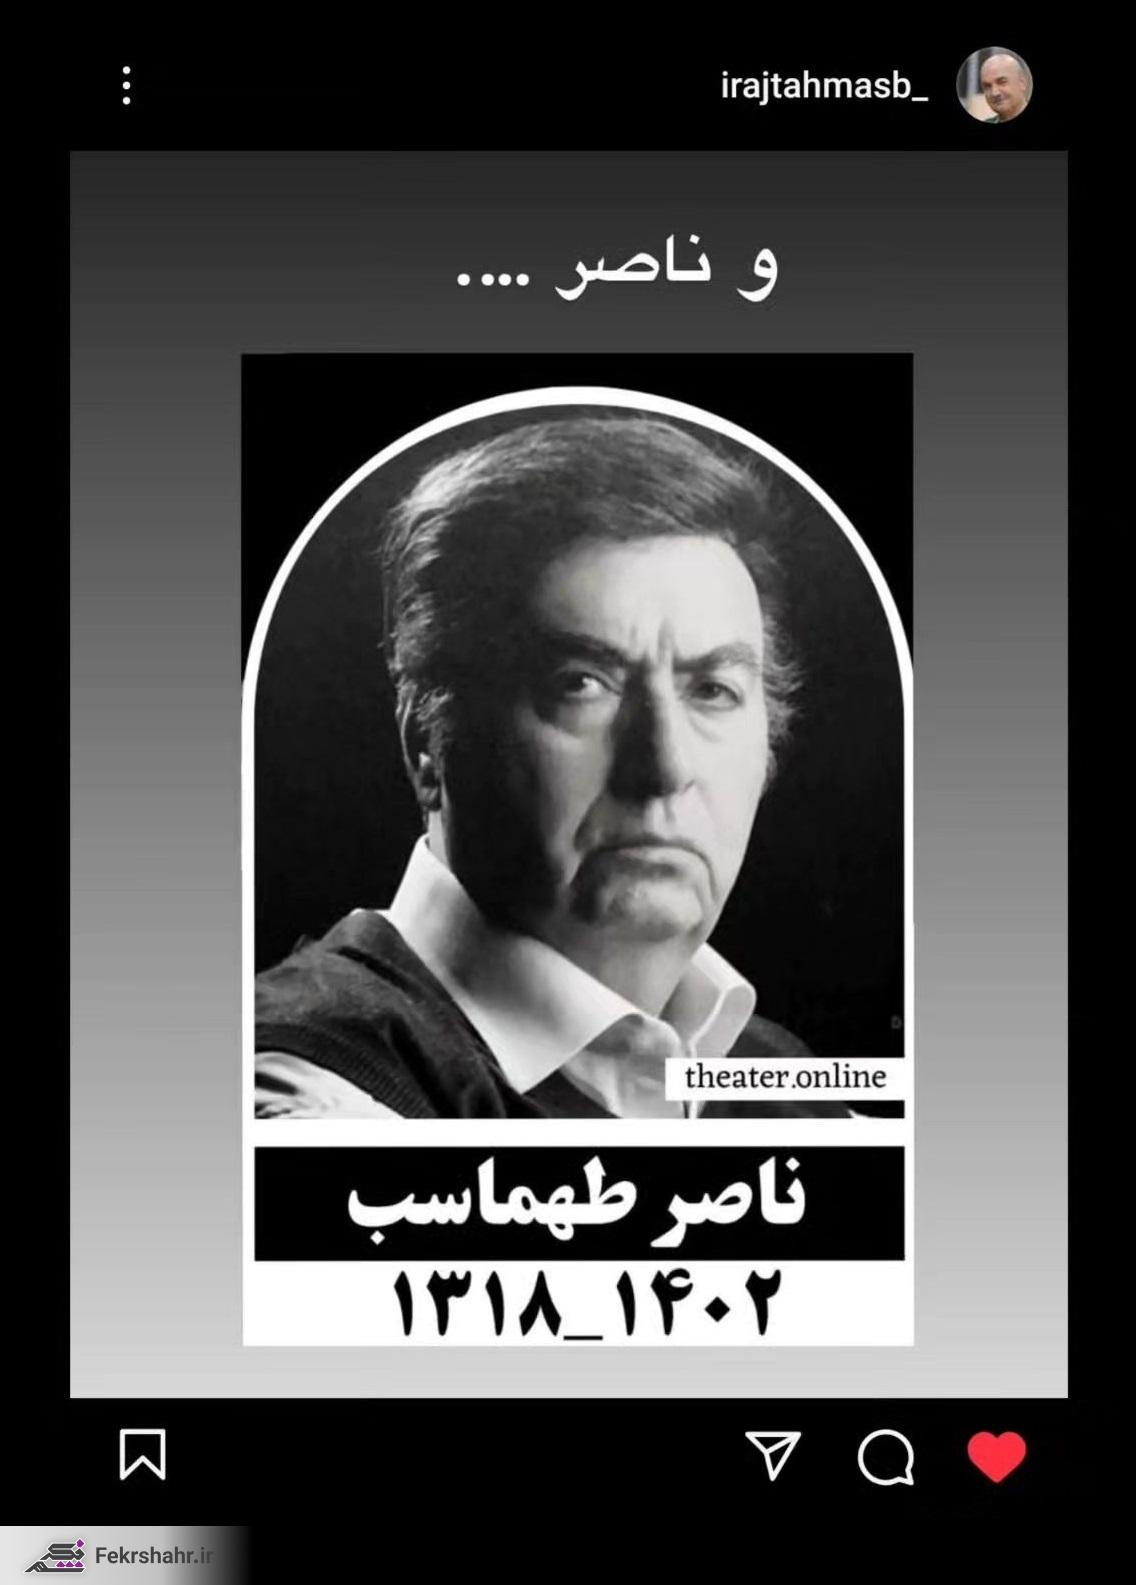 واکنش ایرج طهماسب (آقای مجری) به درگذشت برادرش ناصر طهماسب + عکس